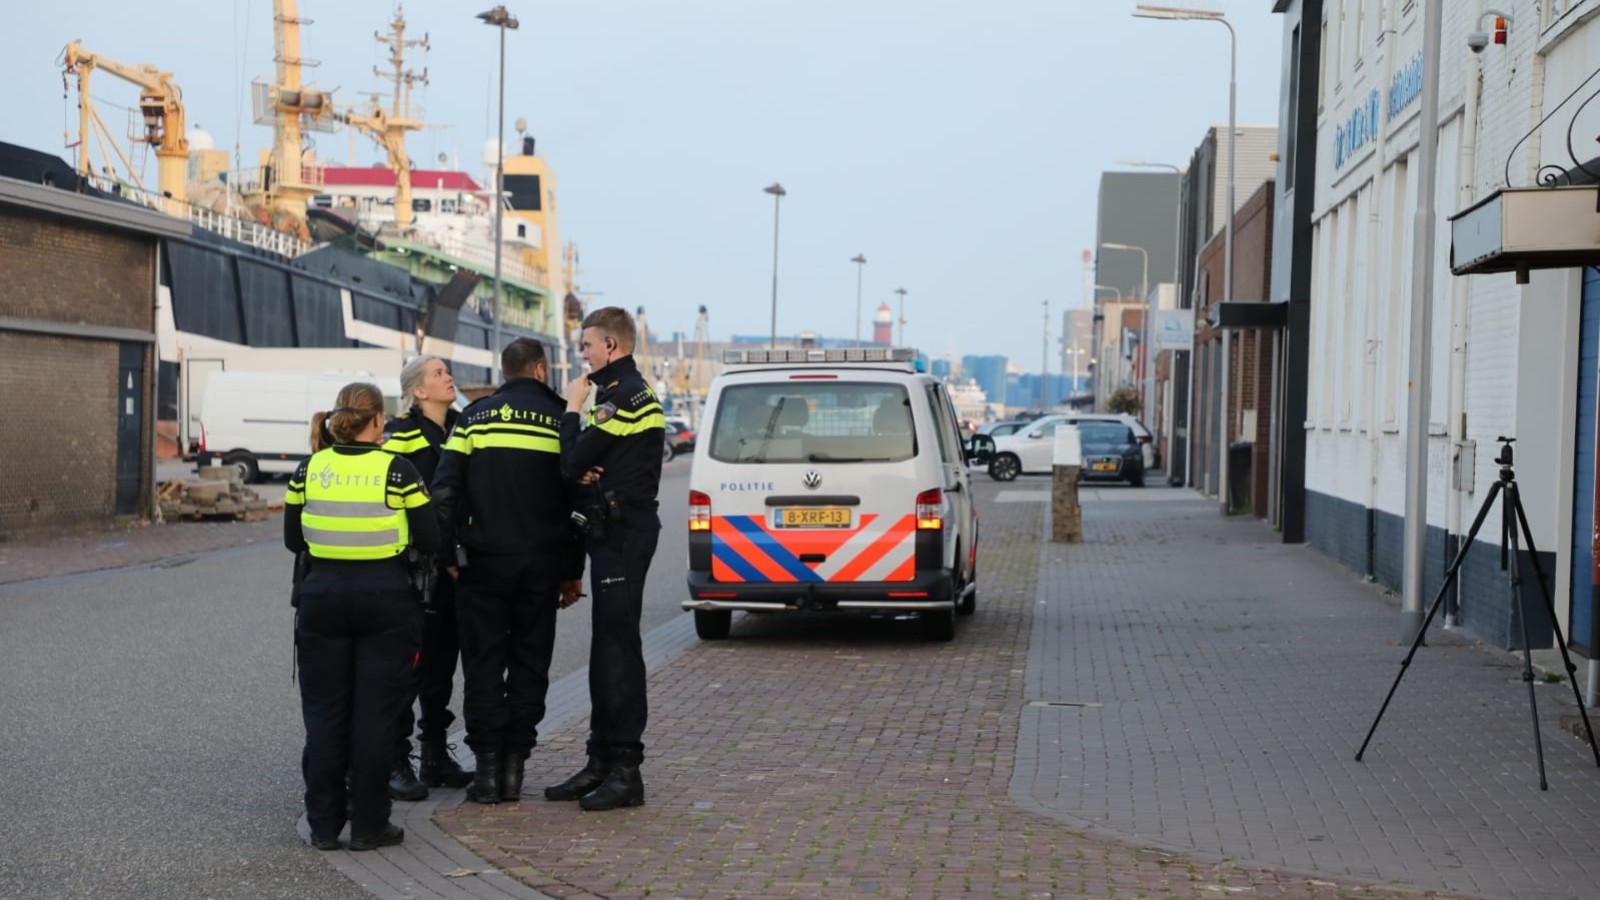 Overval op pand in havengebied IJmuiden